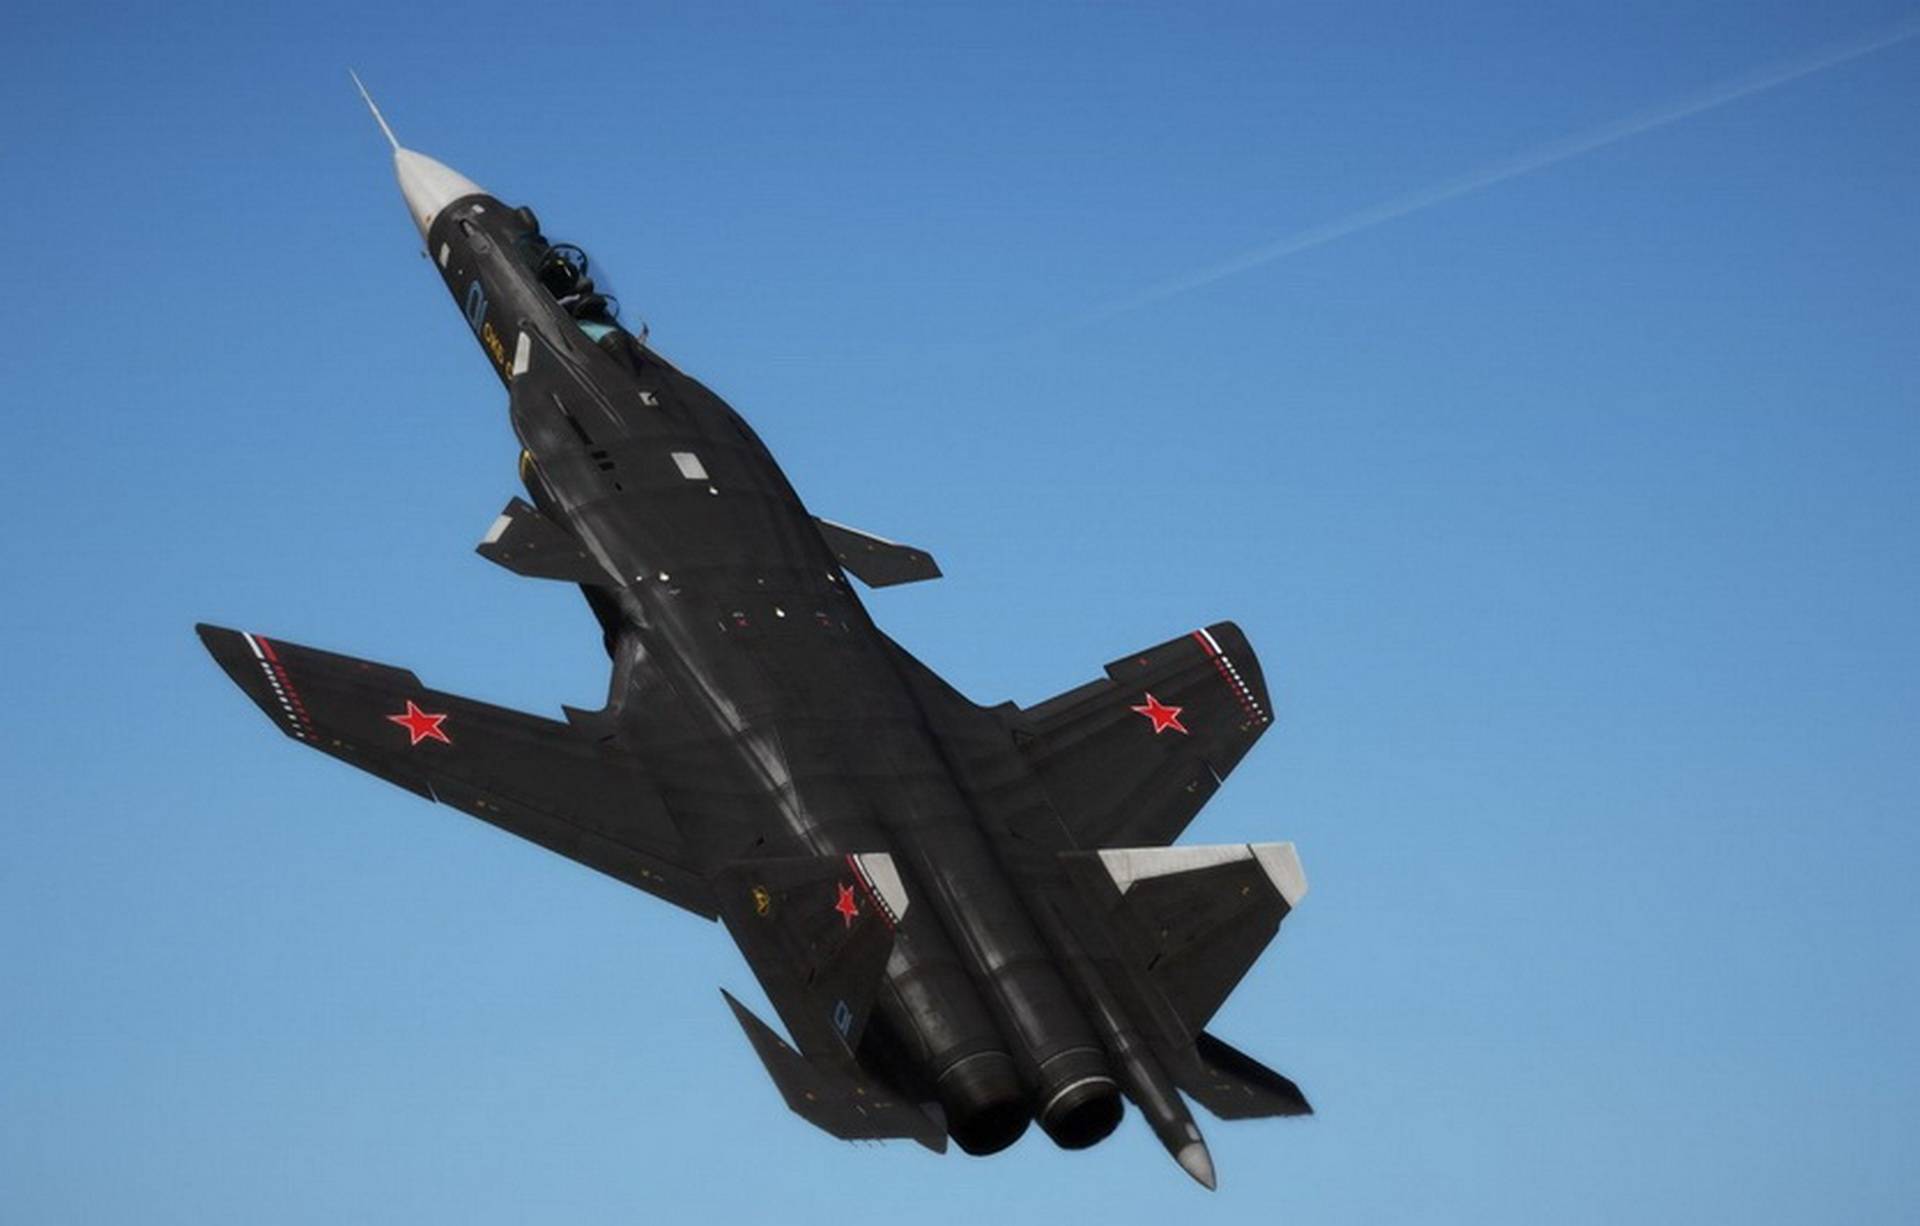 Самолет с обратной стреловидностью крыла су-47: беркут, истребители 6 поколения россии, скорость, характеристики